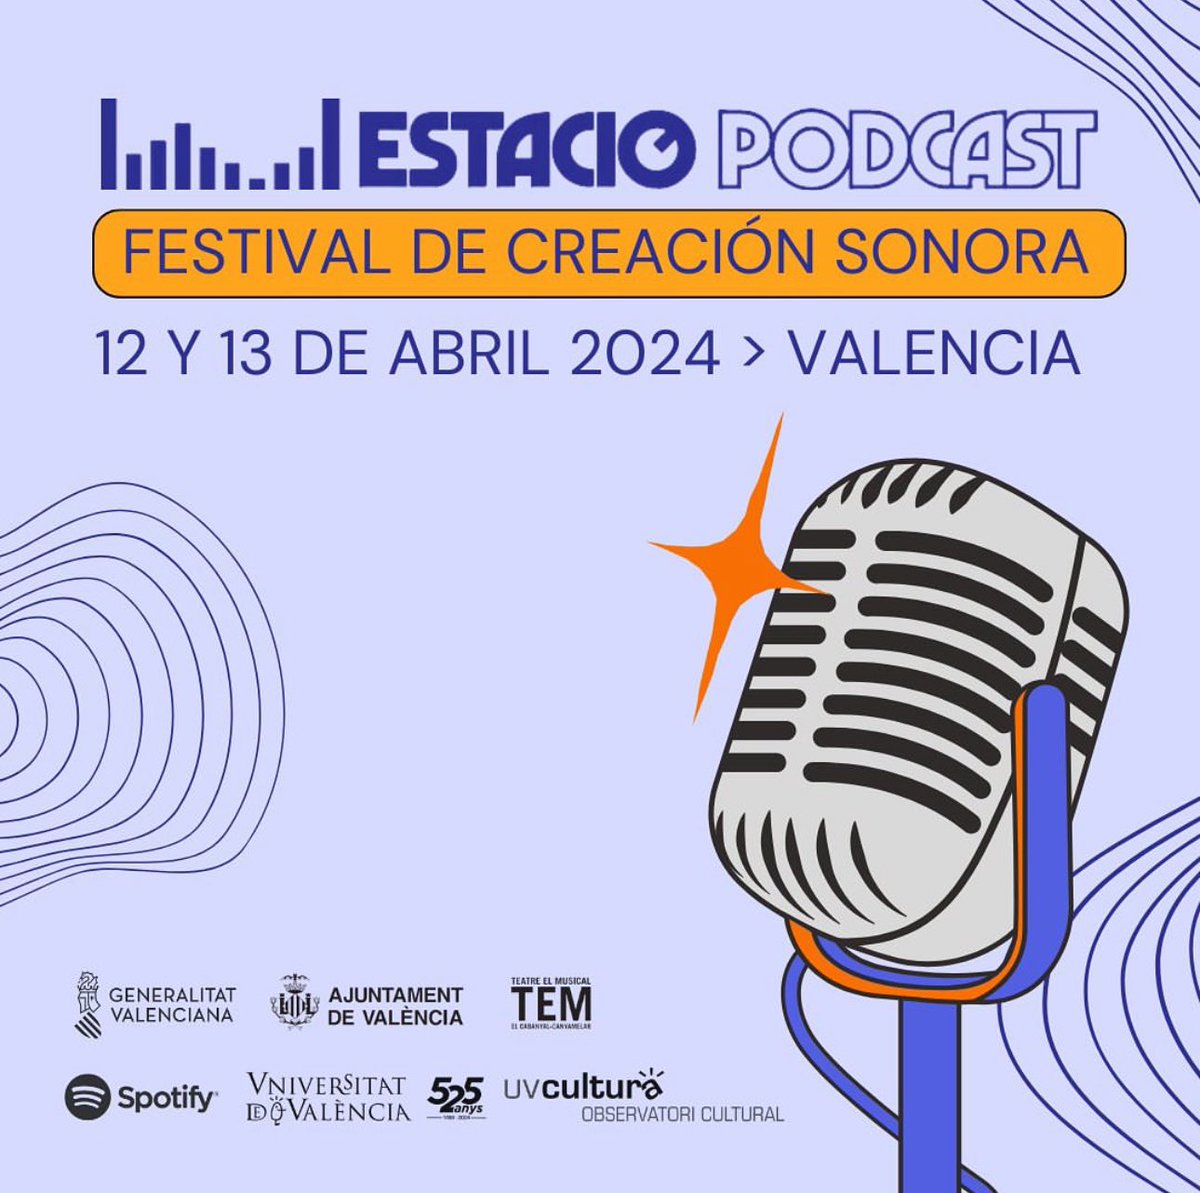 🎙️València acull divendres 12 i dissabte 13 d’abril @PodcastEstacion al @TeatreElMusical amb un cap de setmana ple de podcast en directe, tallers, xarrades i música en viu🎧 👉estacionpodcast.com/valencia/